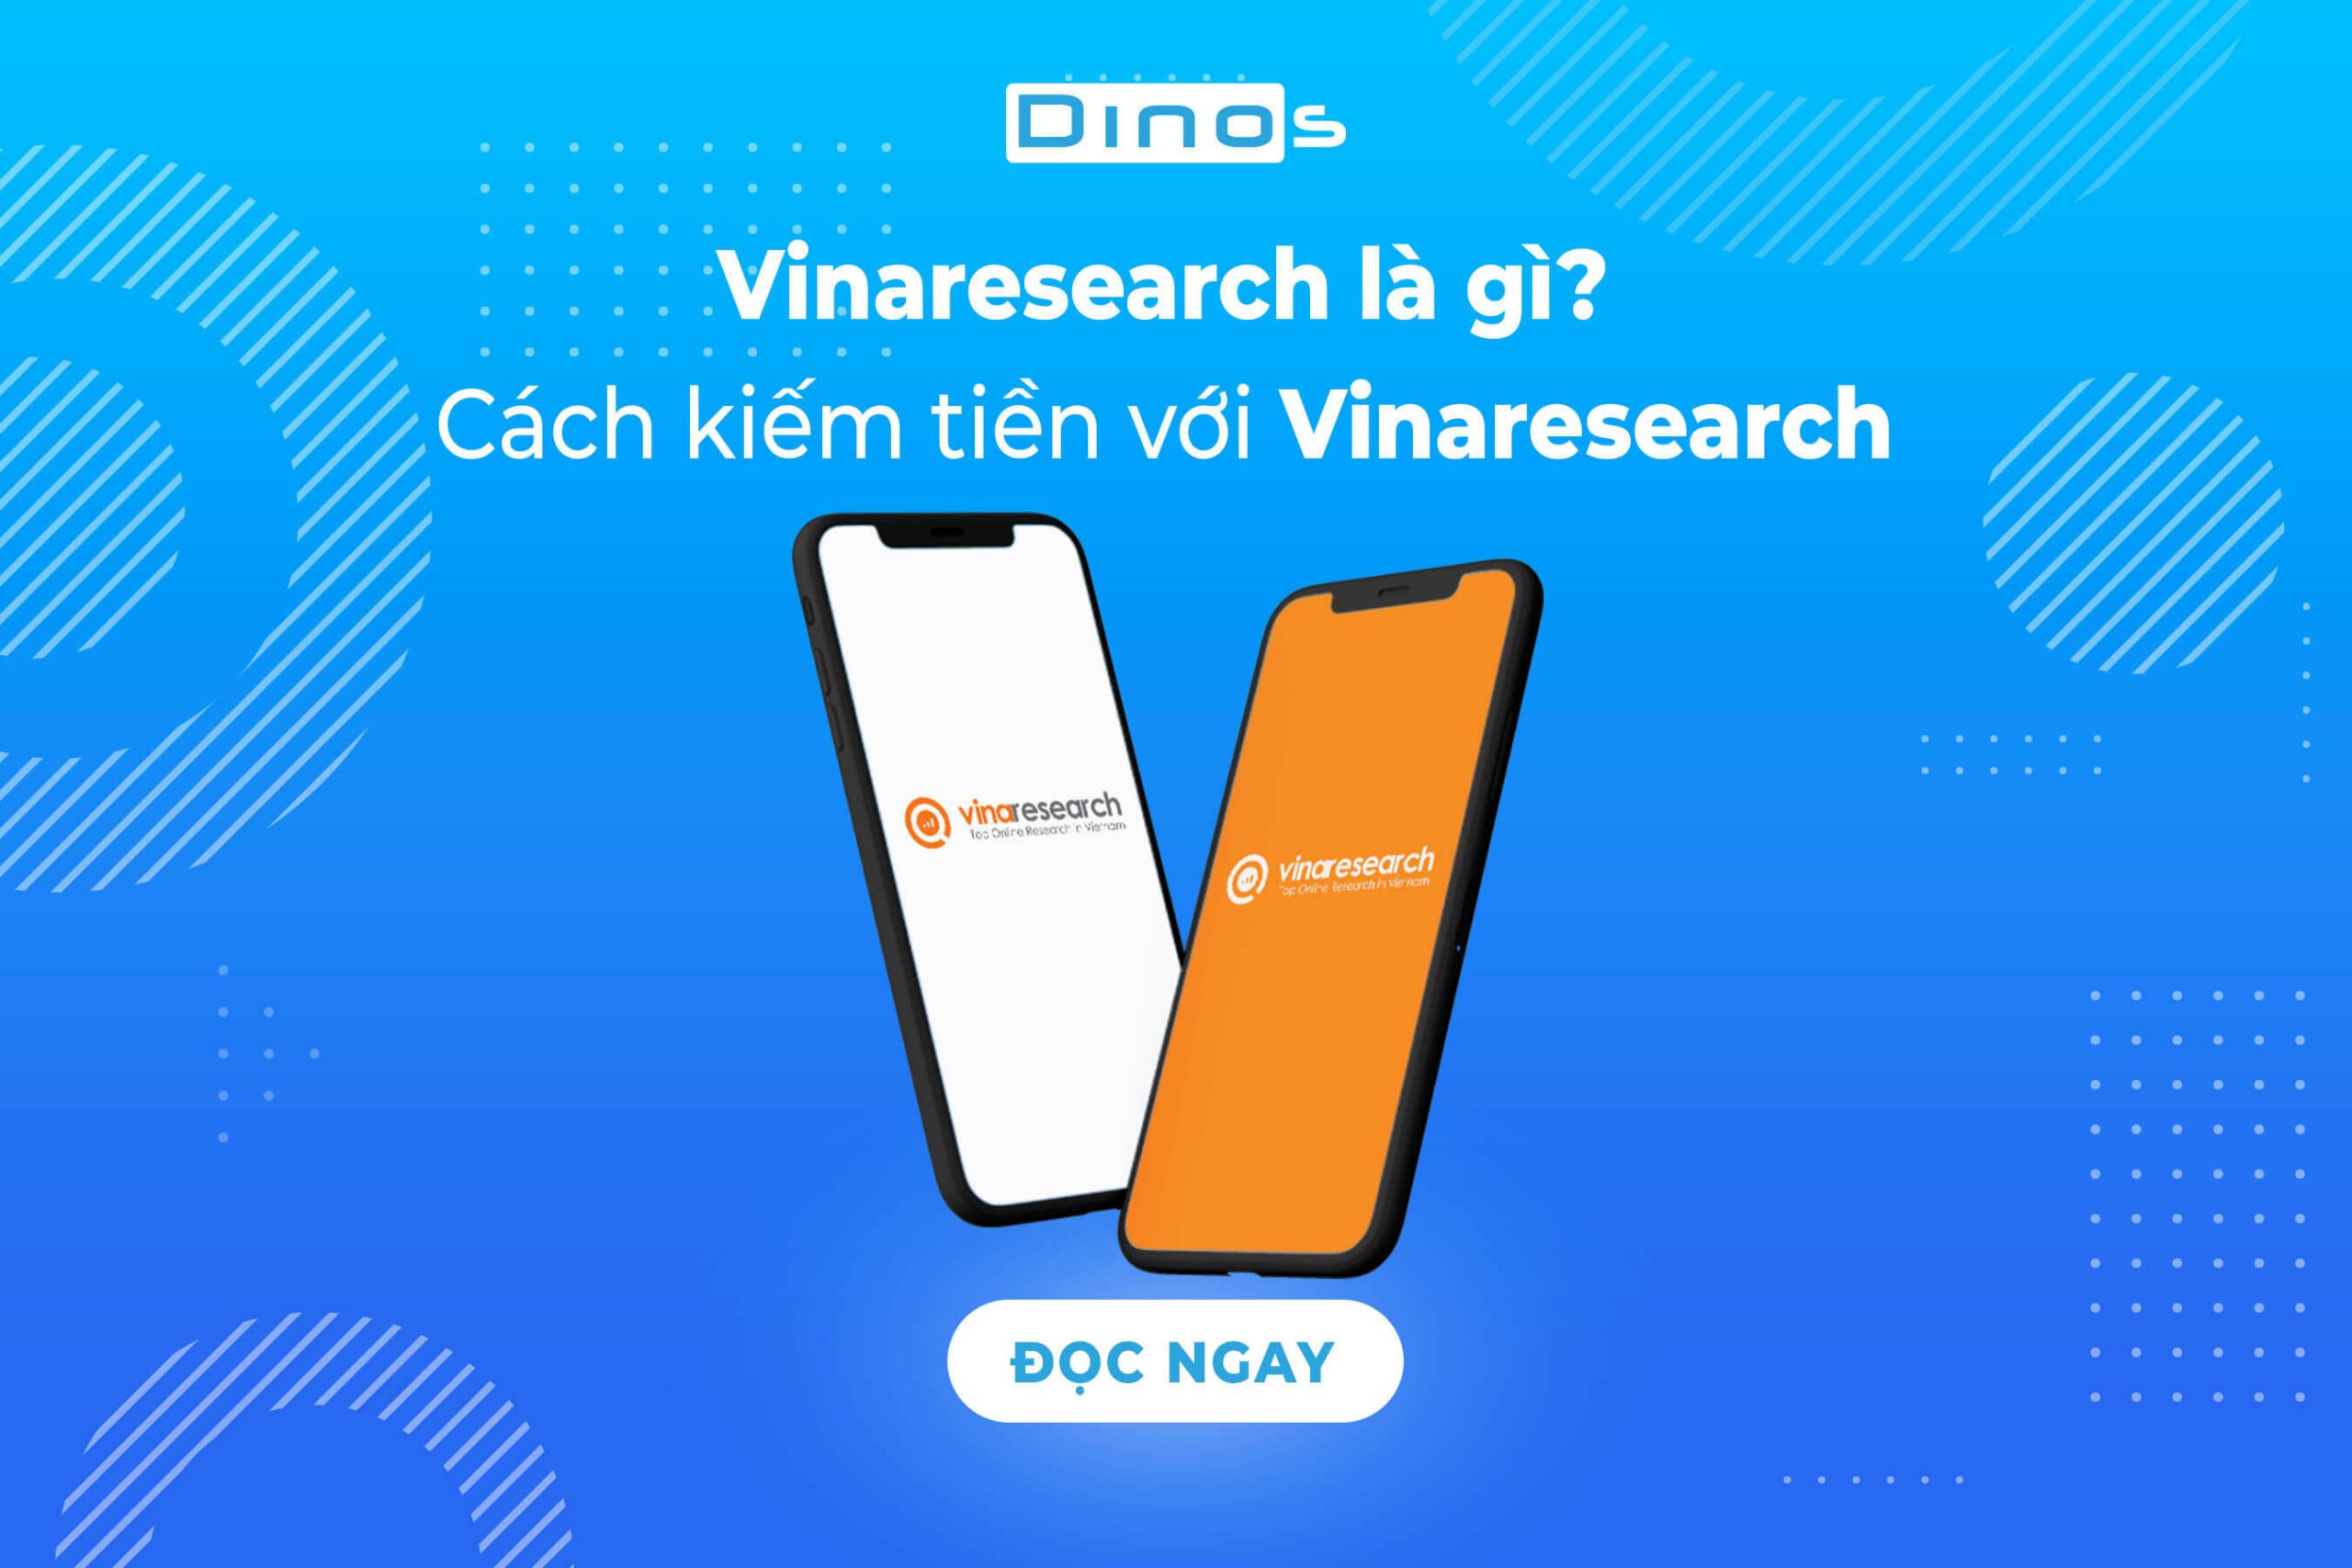 Vinaresearch là gì? Có lừa đảo không? Cách đăng ký kiếm tiền với vinaresearch